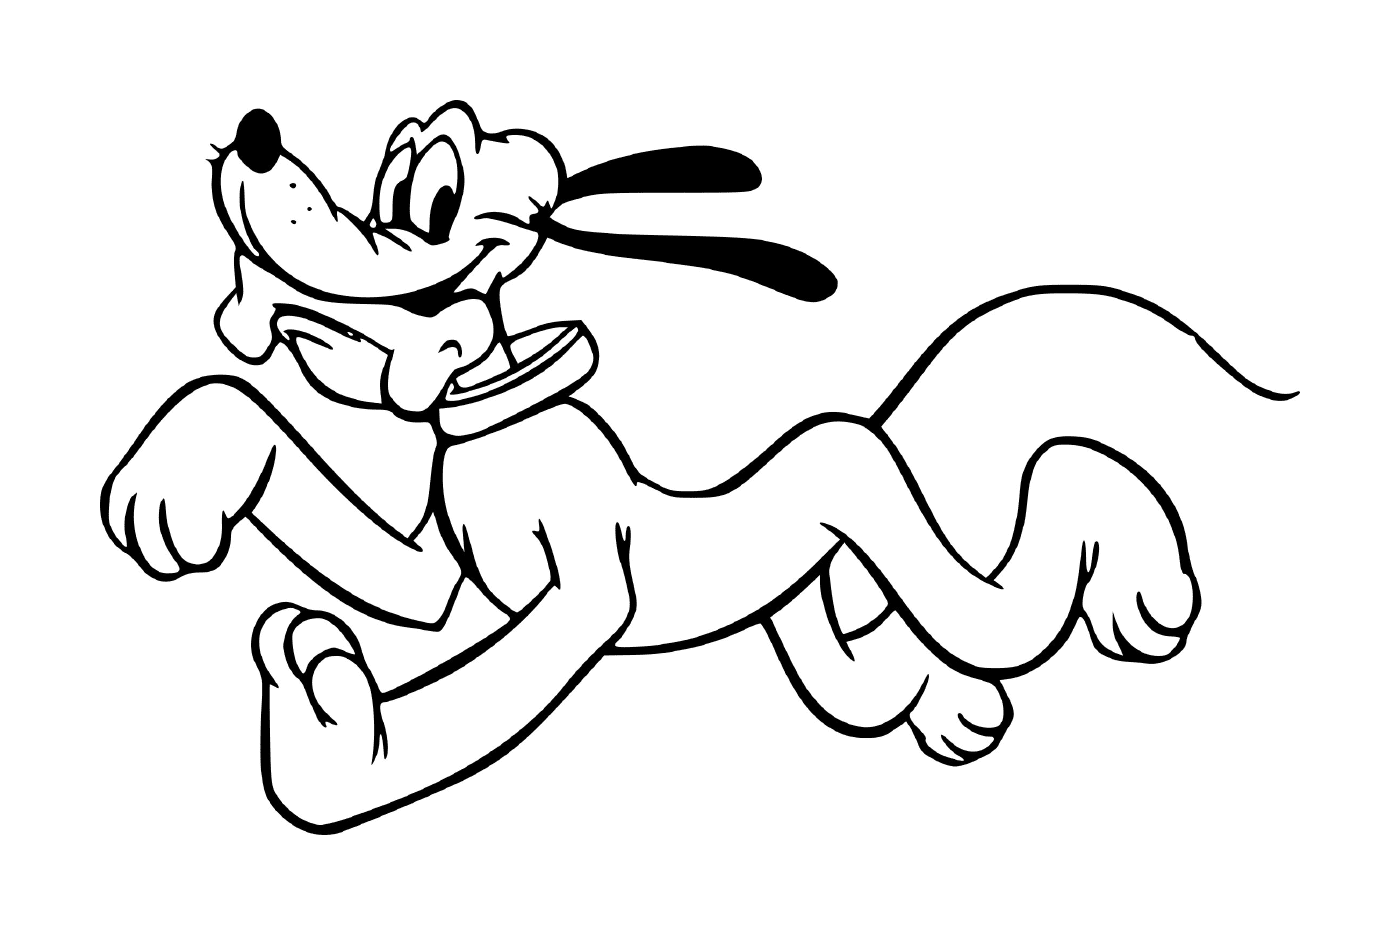  Plutone, il cane malizioso, corre con un frisbee in bocca 